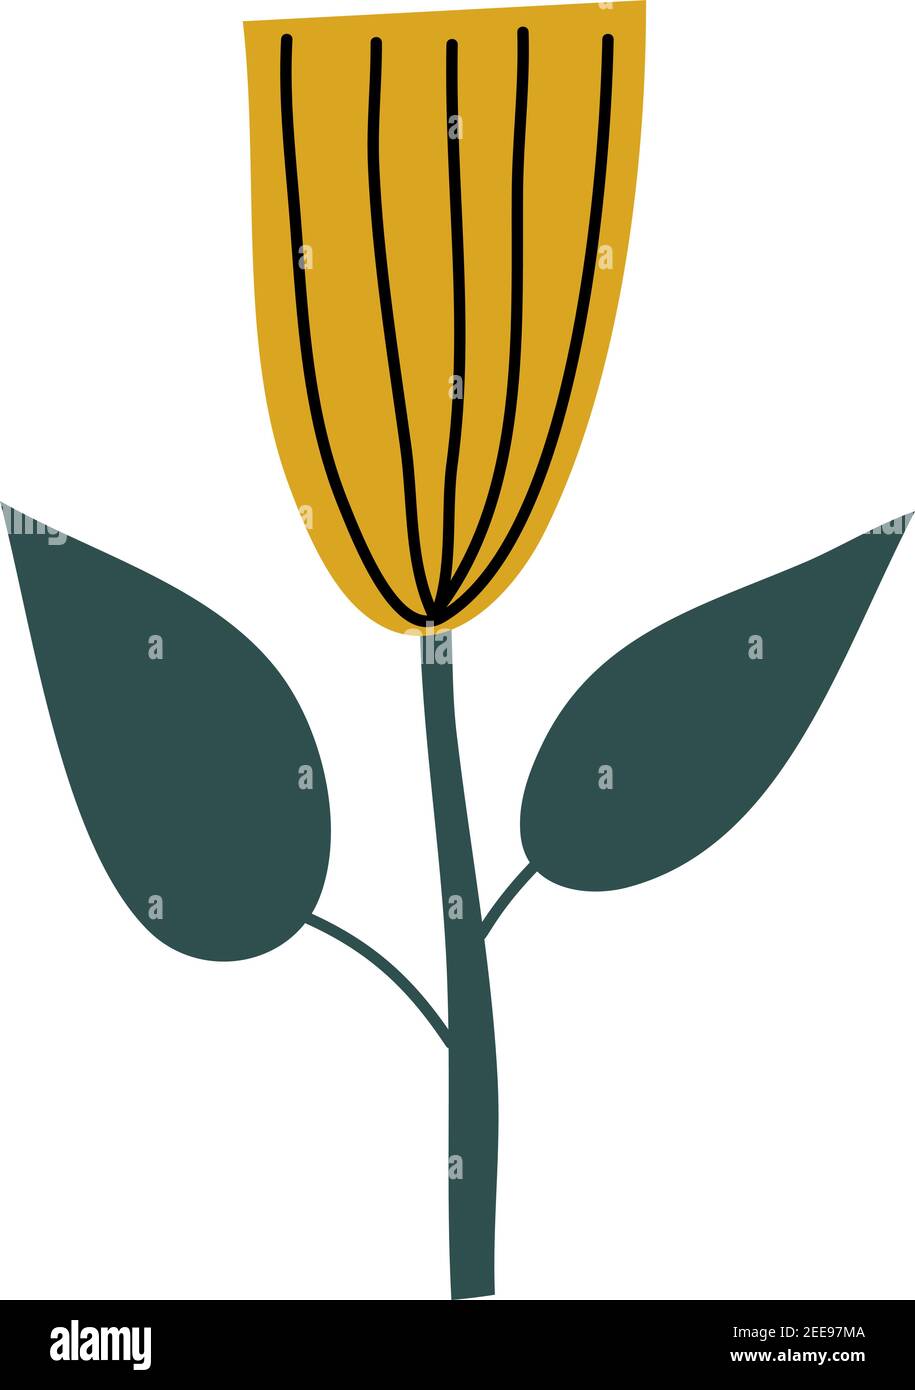 Fiore di primavera giallo stilizzato vettoriale. Elemento grafico dell'illustrazione scandinava. Immagine floreale estiva decorativa per il saluto di San Valentino o poster Illustrazione Vettoriale